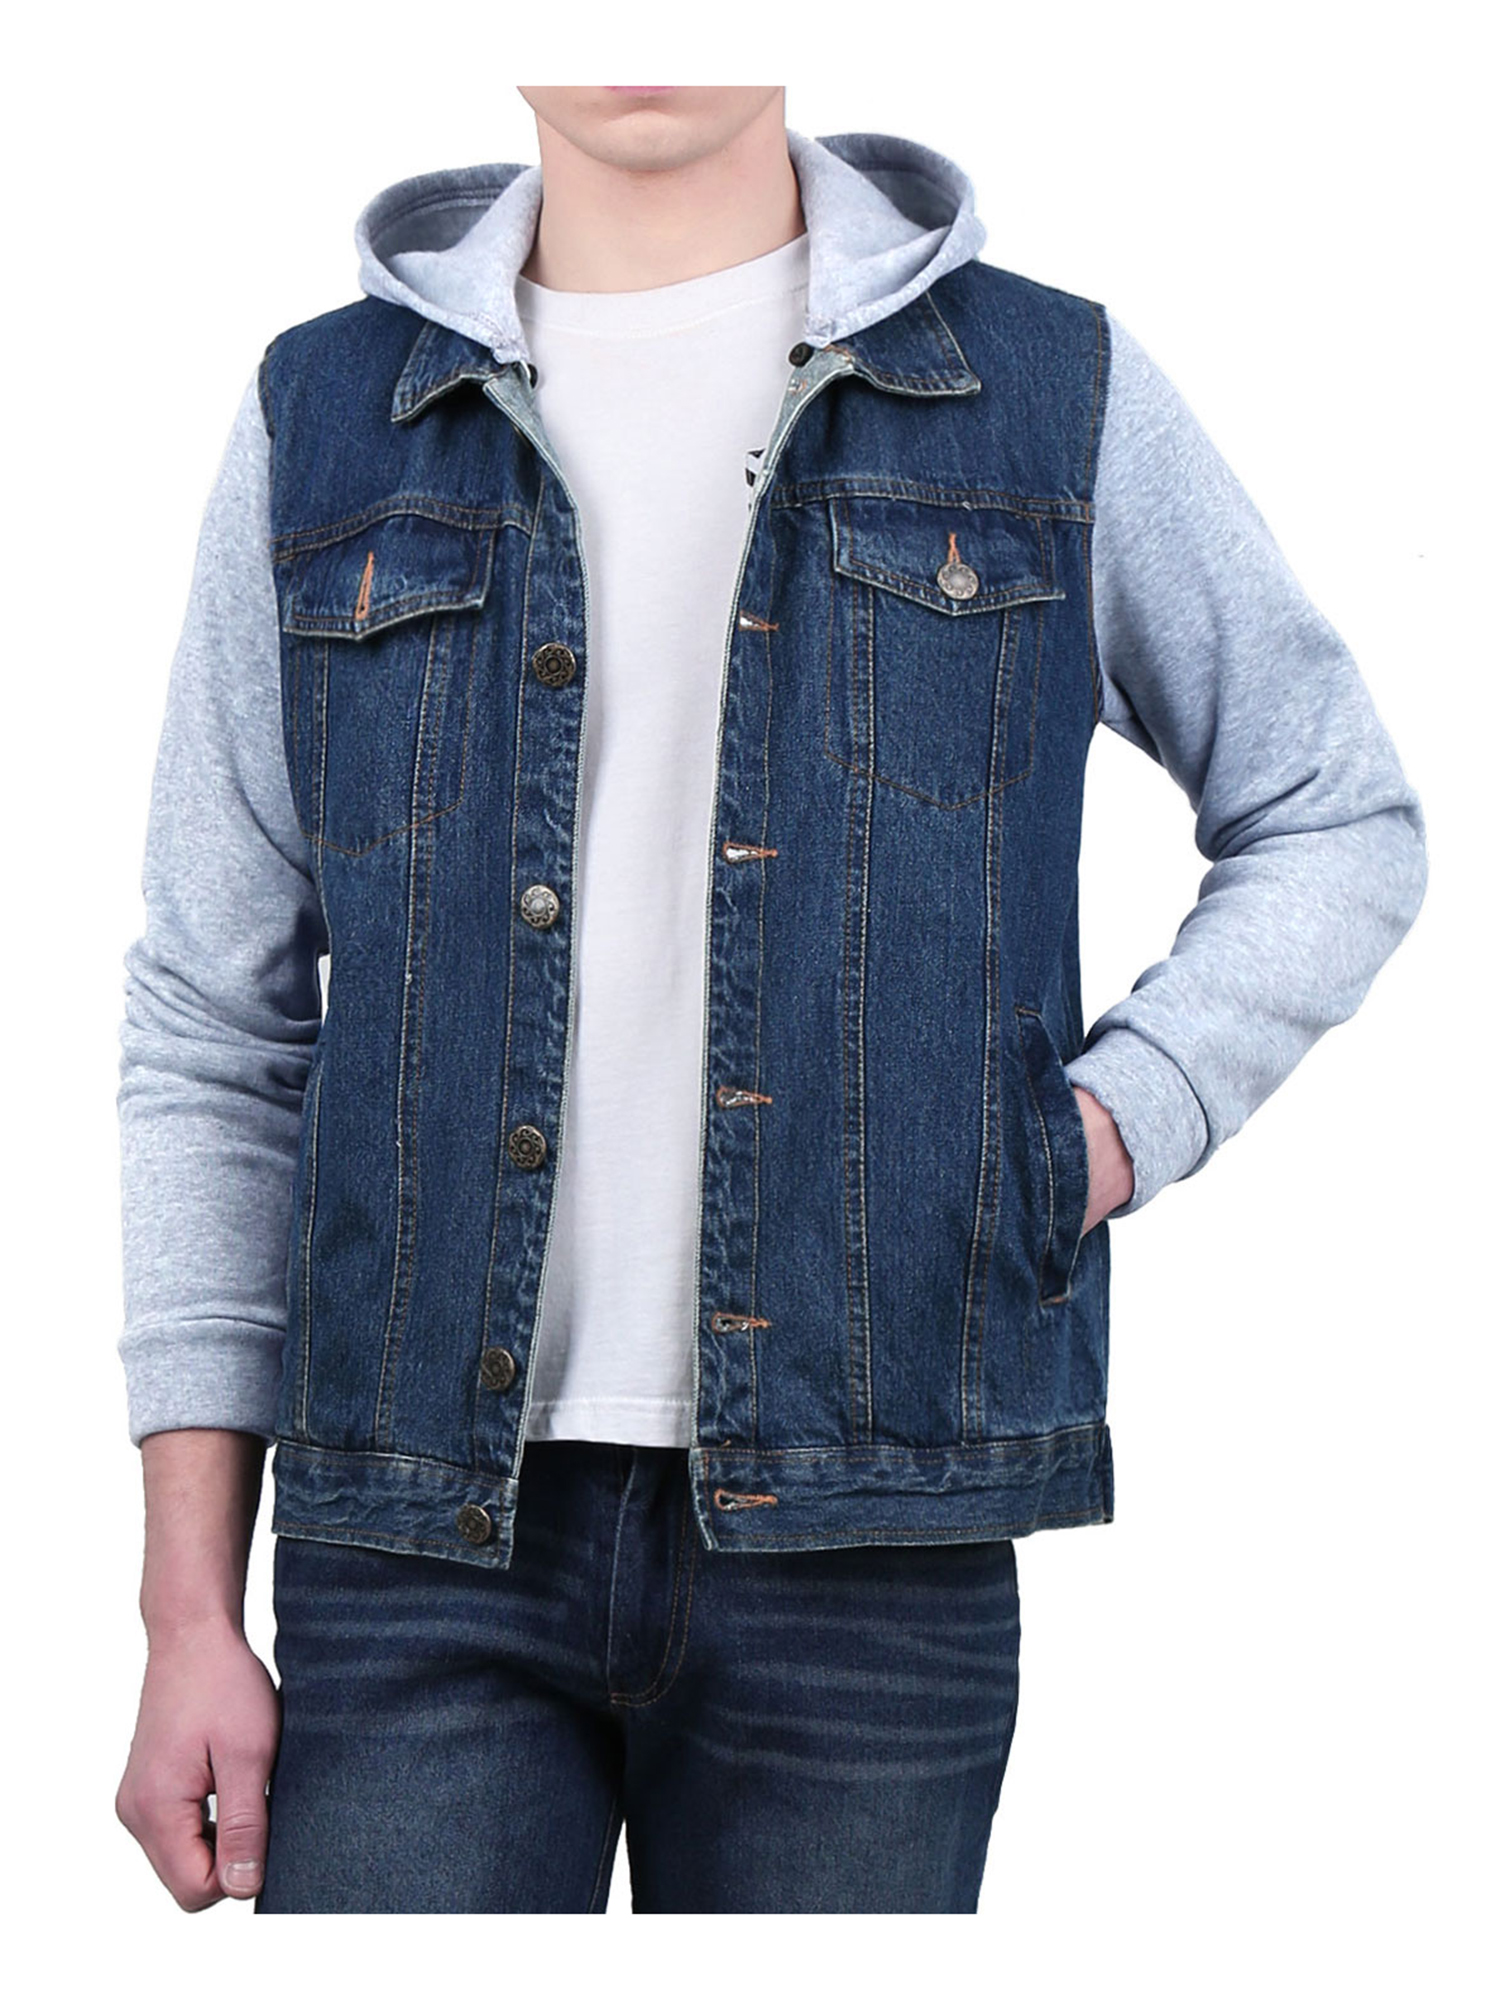 Buy Mens Hoodies Sweatshirt Jeans Patchwork Sleeves Button Down Denim Jacket  Online at Lowest Price in Ubuy Nigeria. 635629334